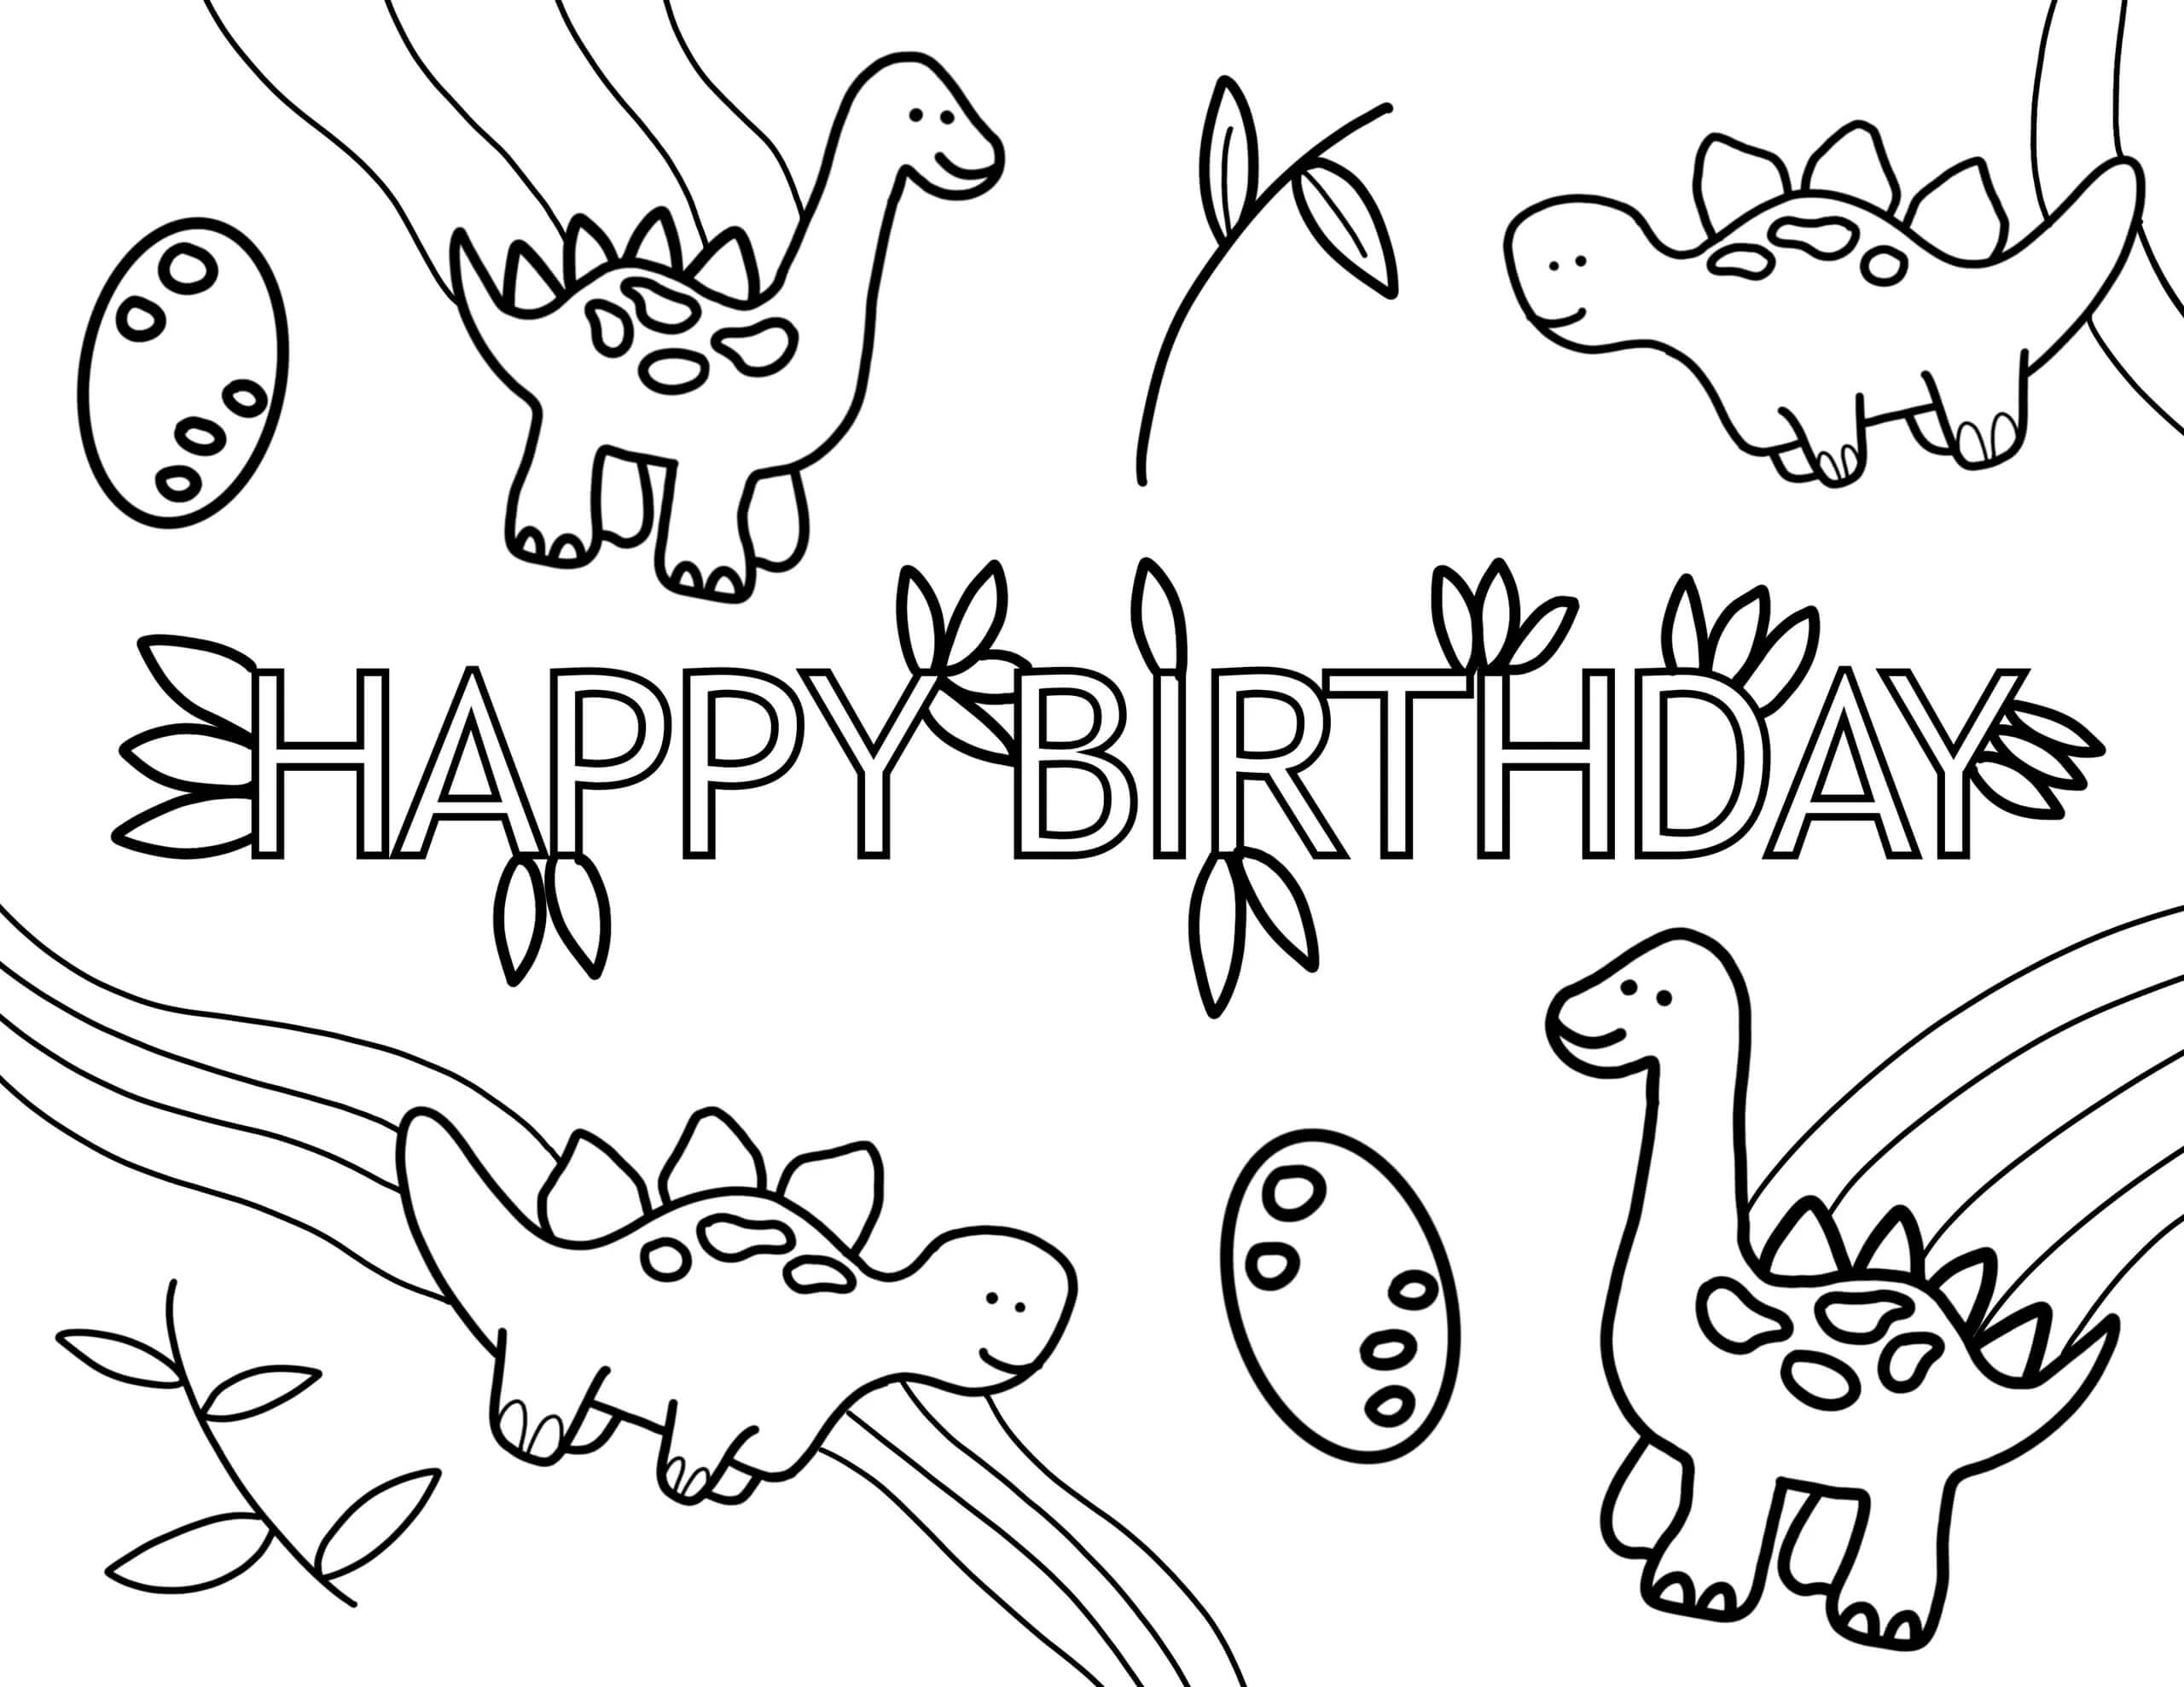 Dibujos de Dinosaurios En Fiesta De Cumpleaños para colorear